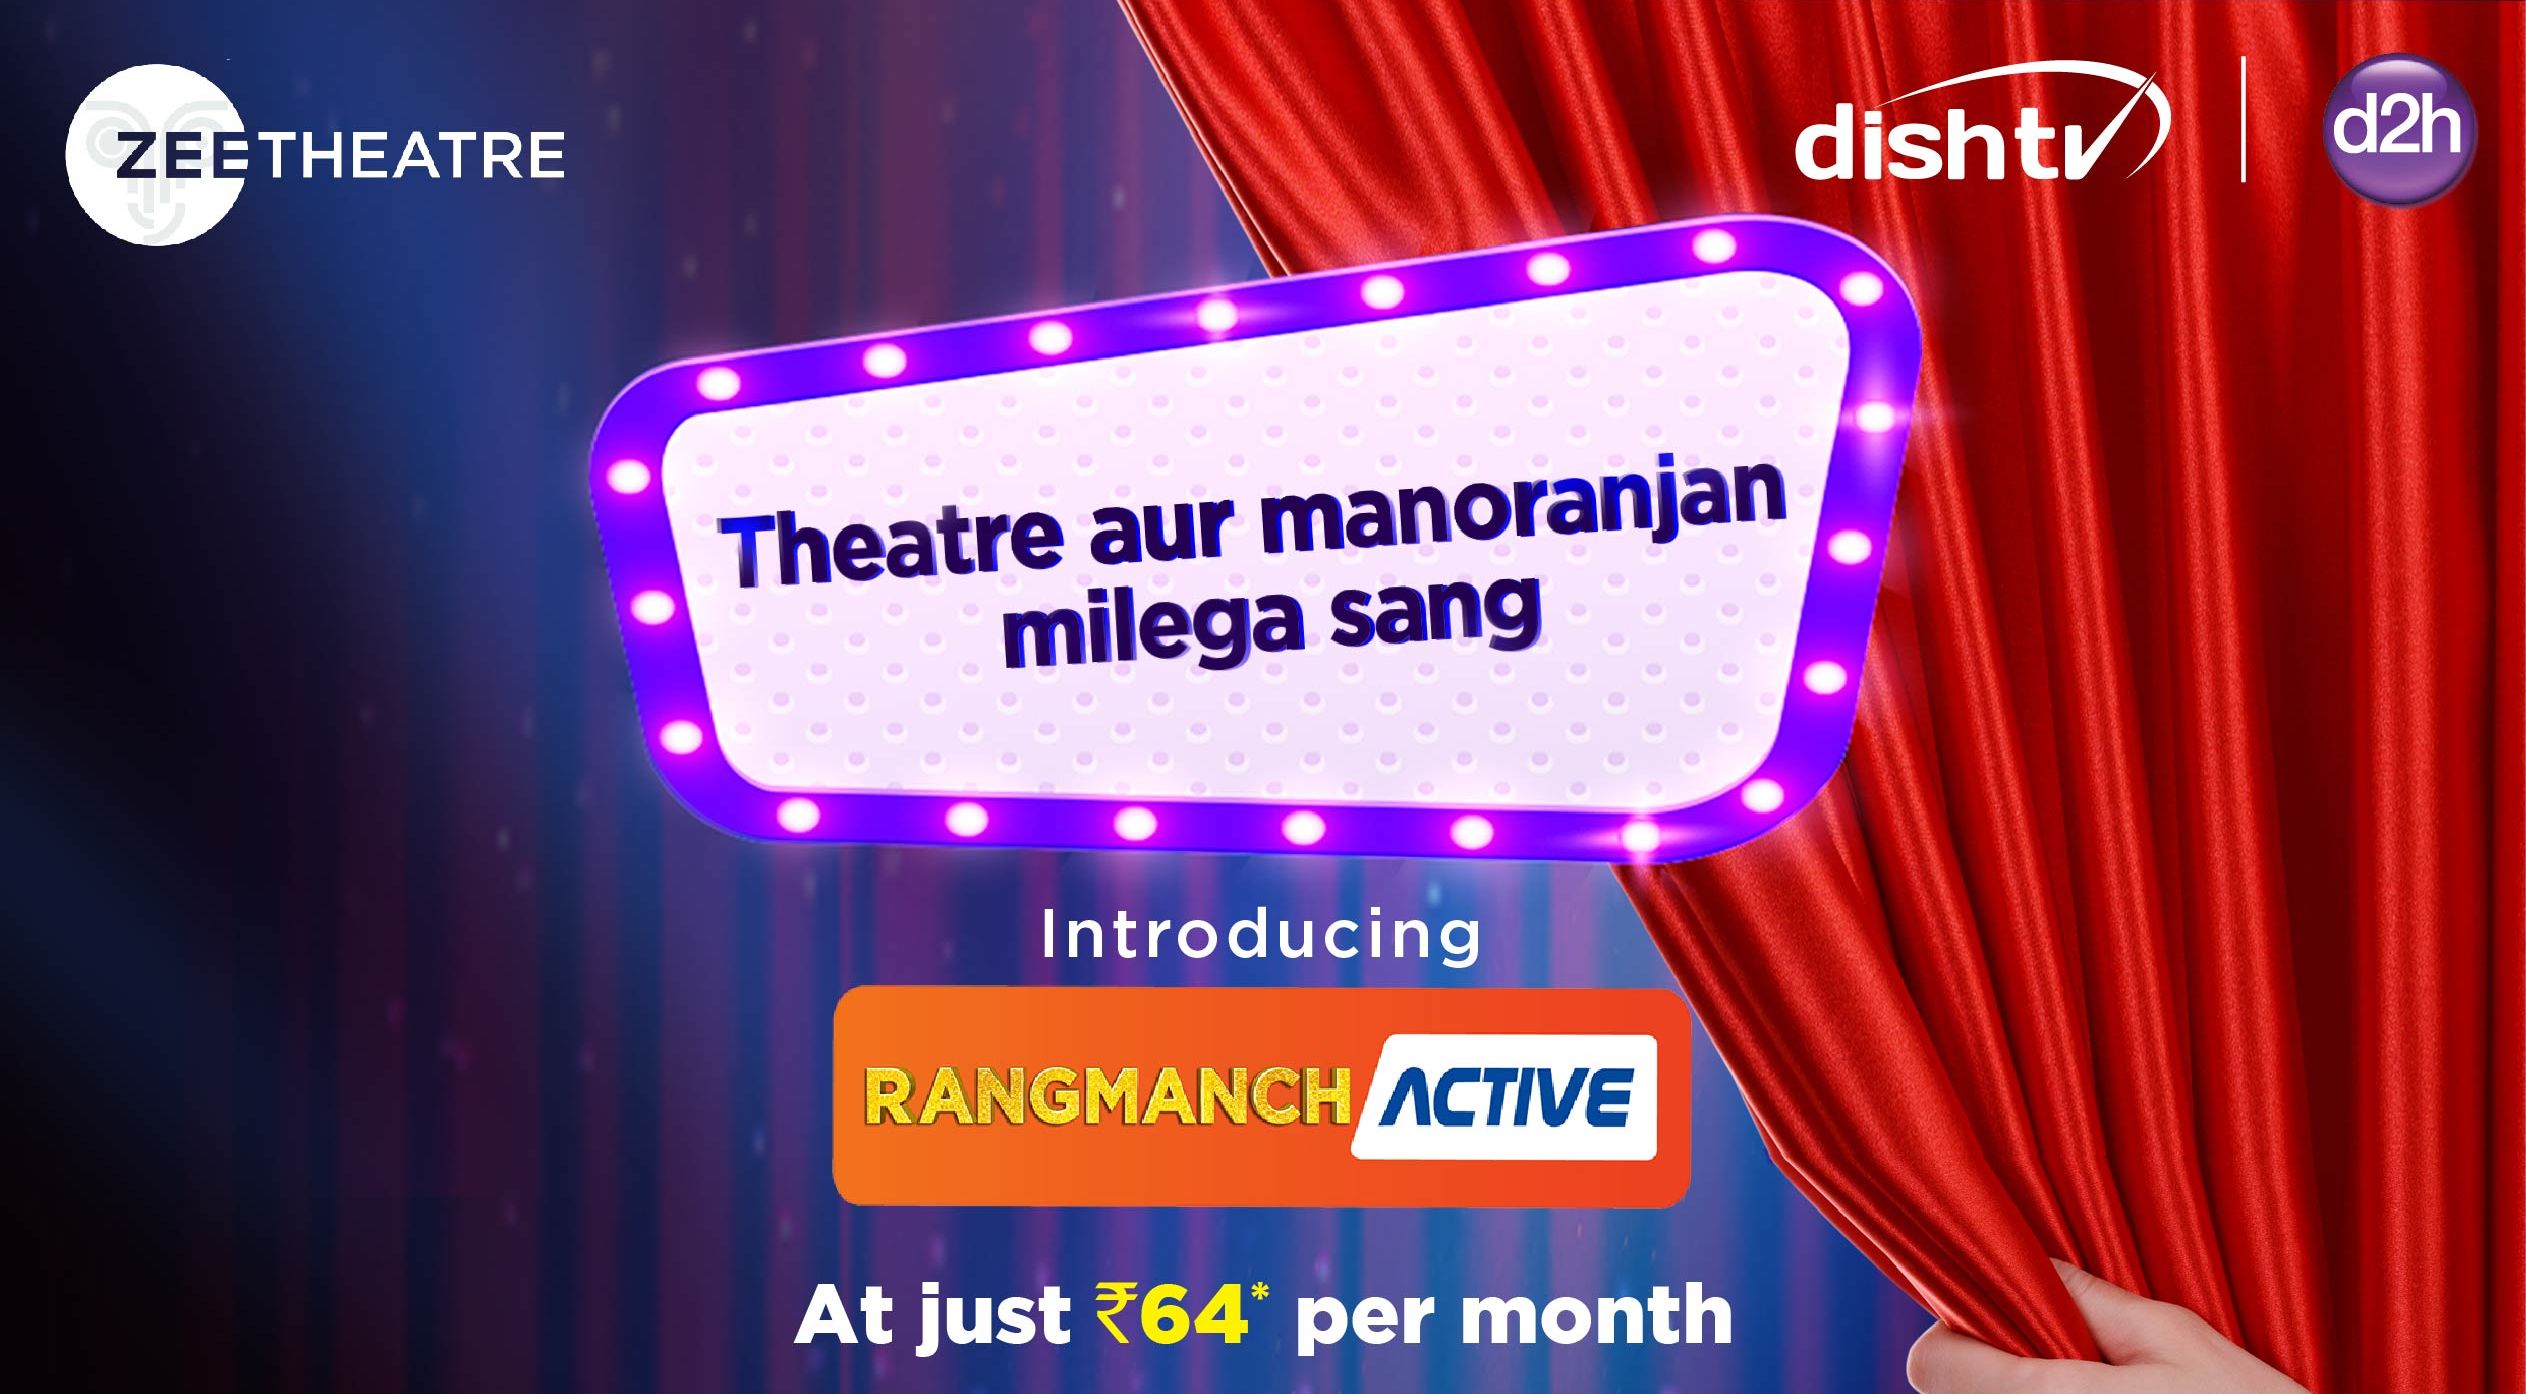 Rangmanch Active Dish TV